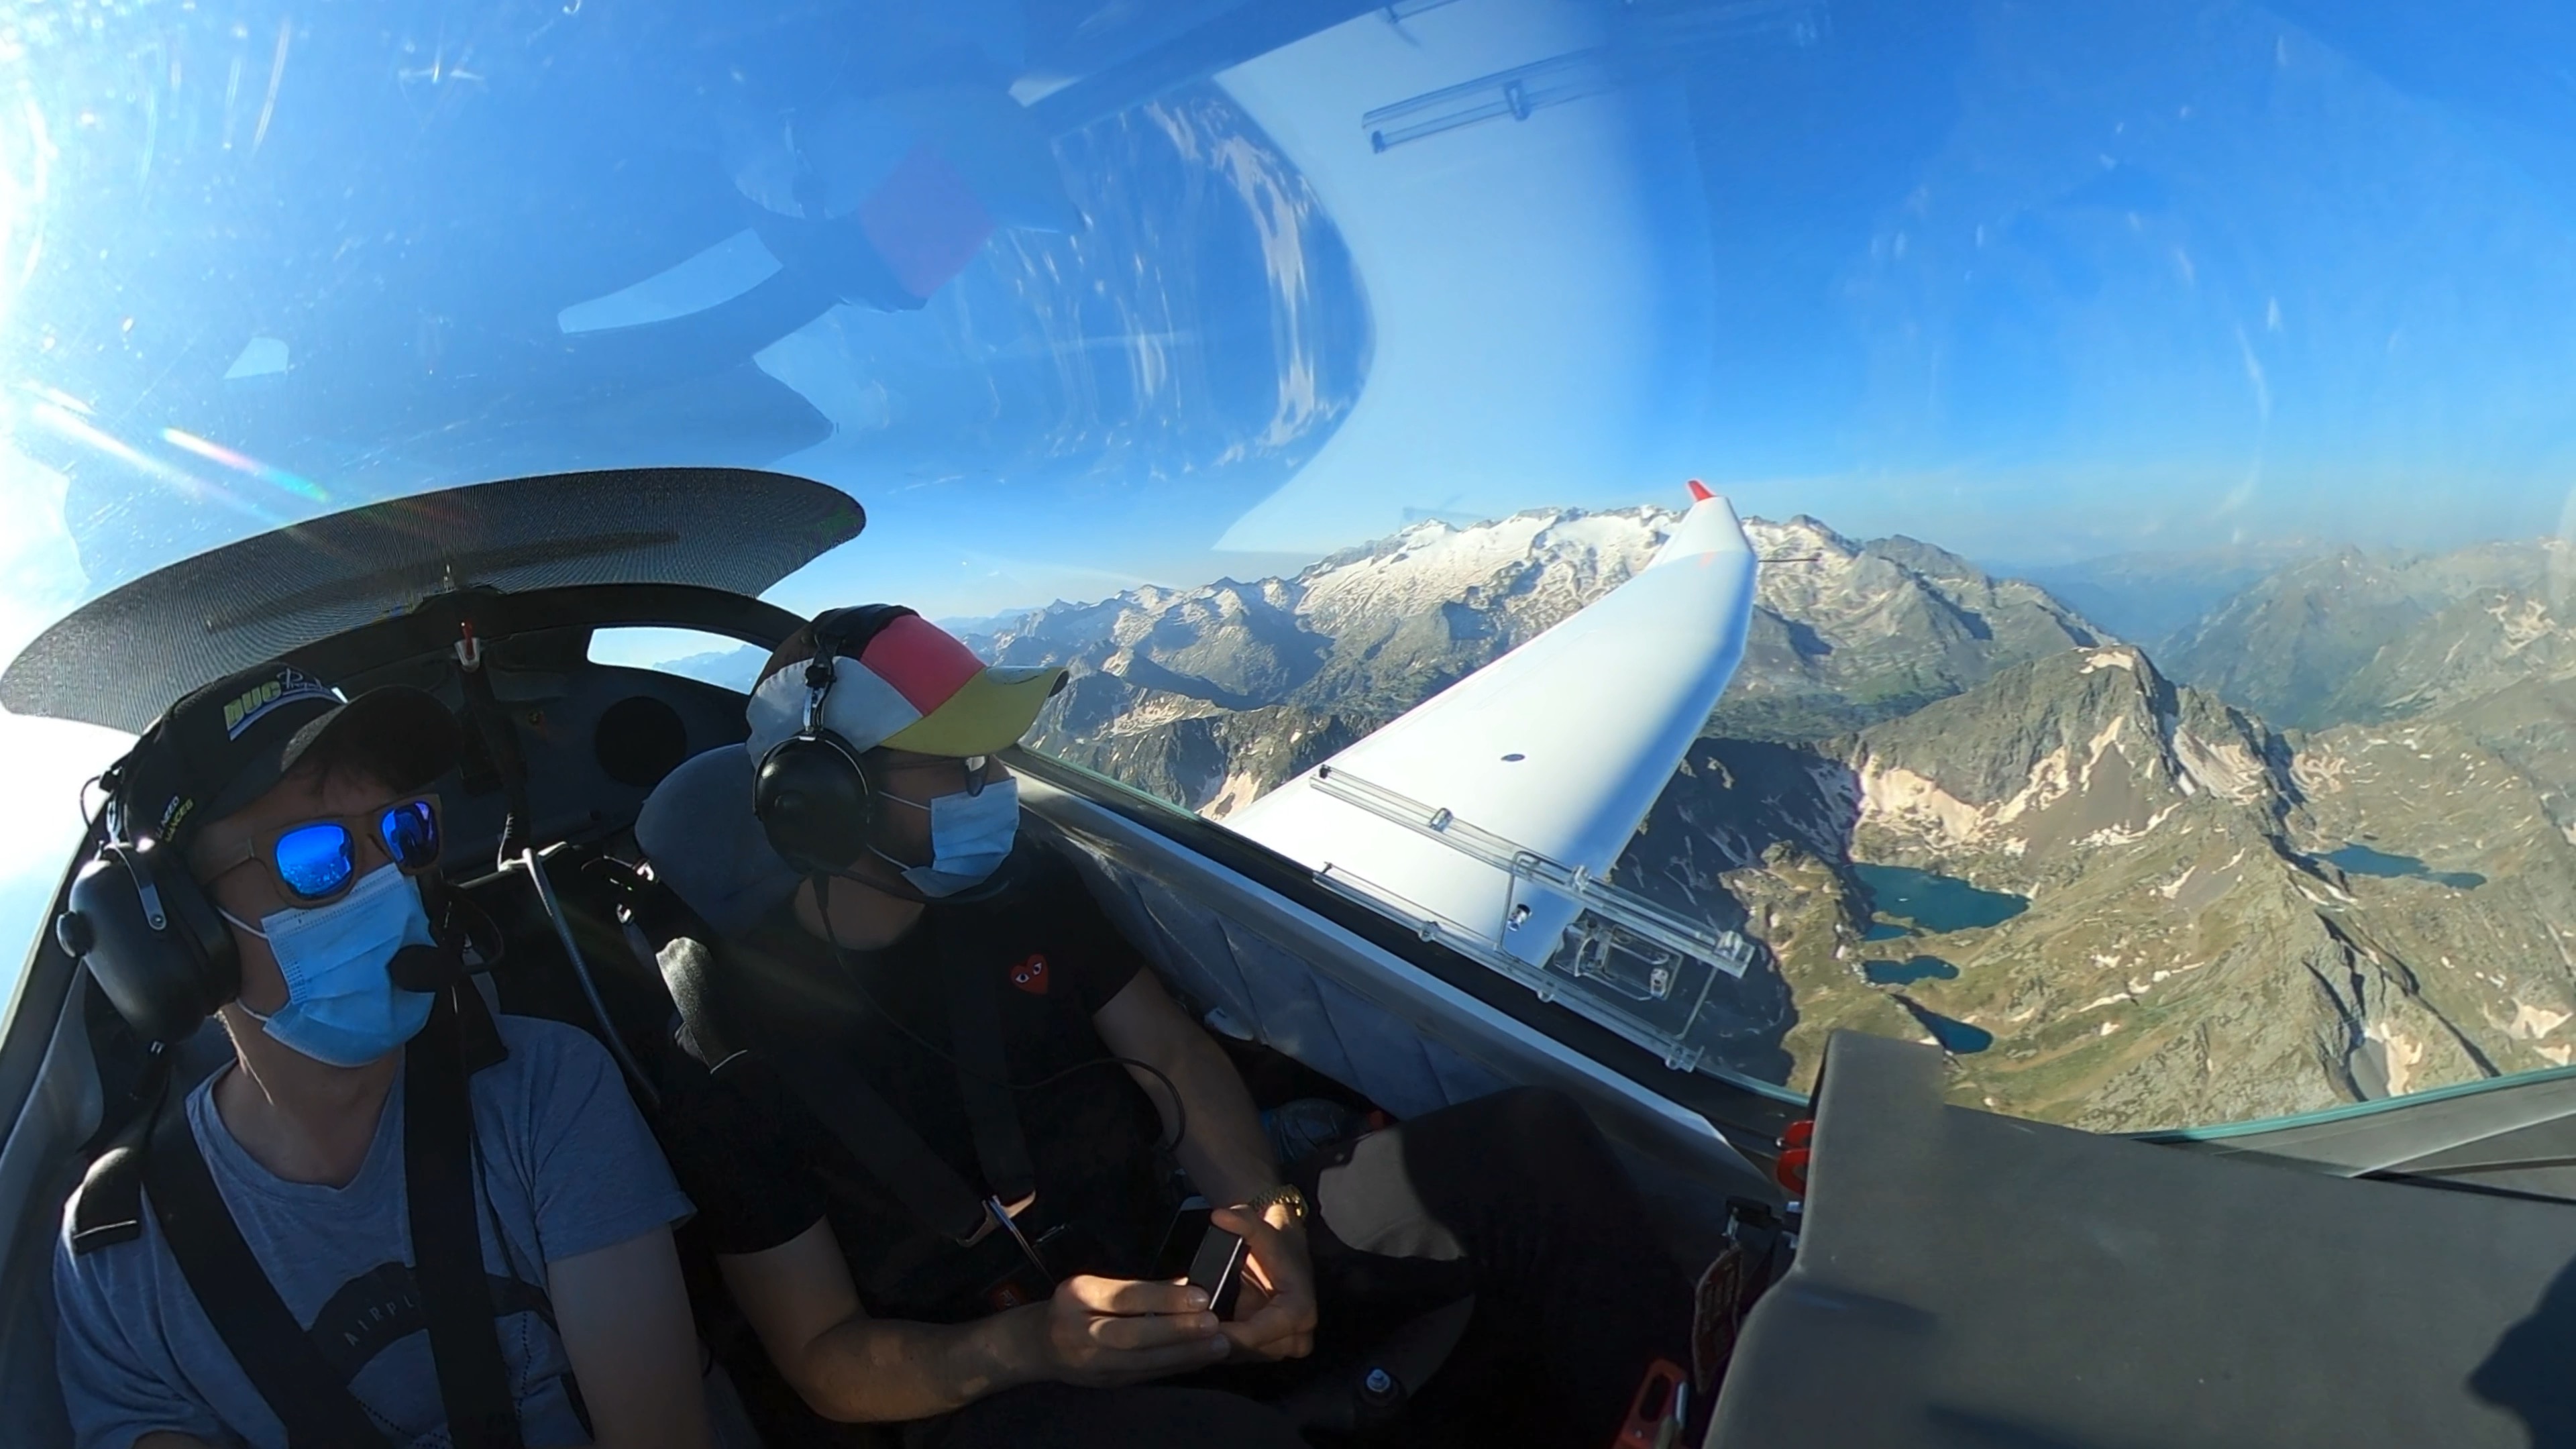 Vol en planeur au dessus des Pyrénées avec un pilote expérimenté - Crédit Photo @Morgane Monneret